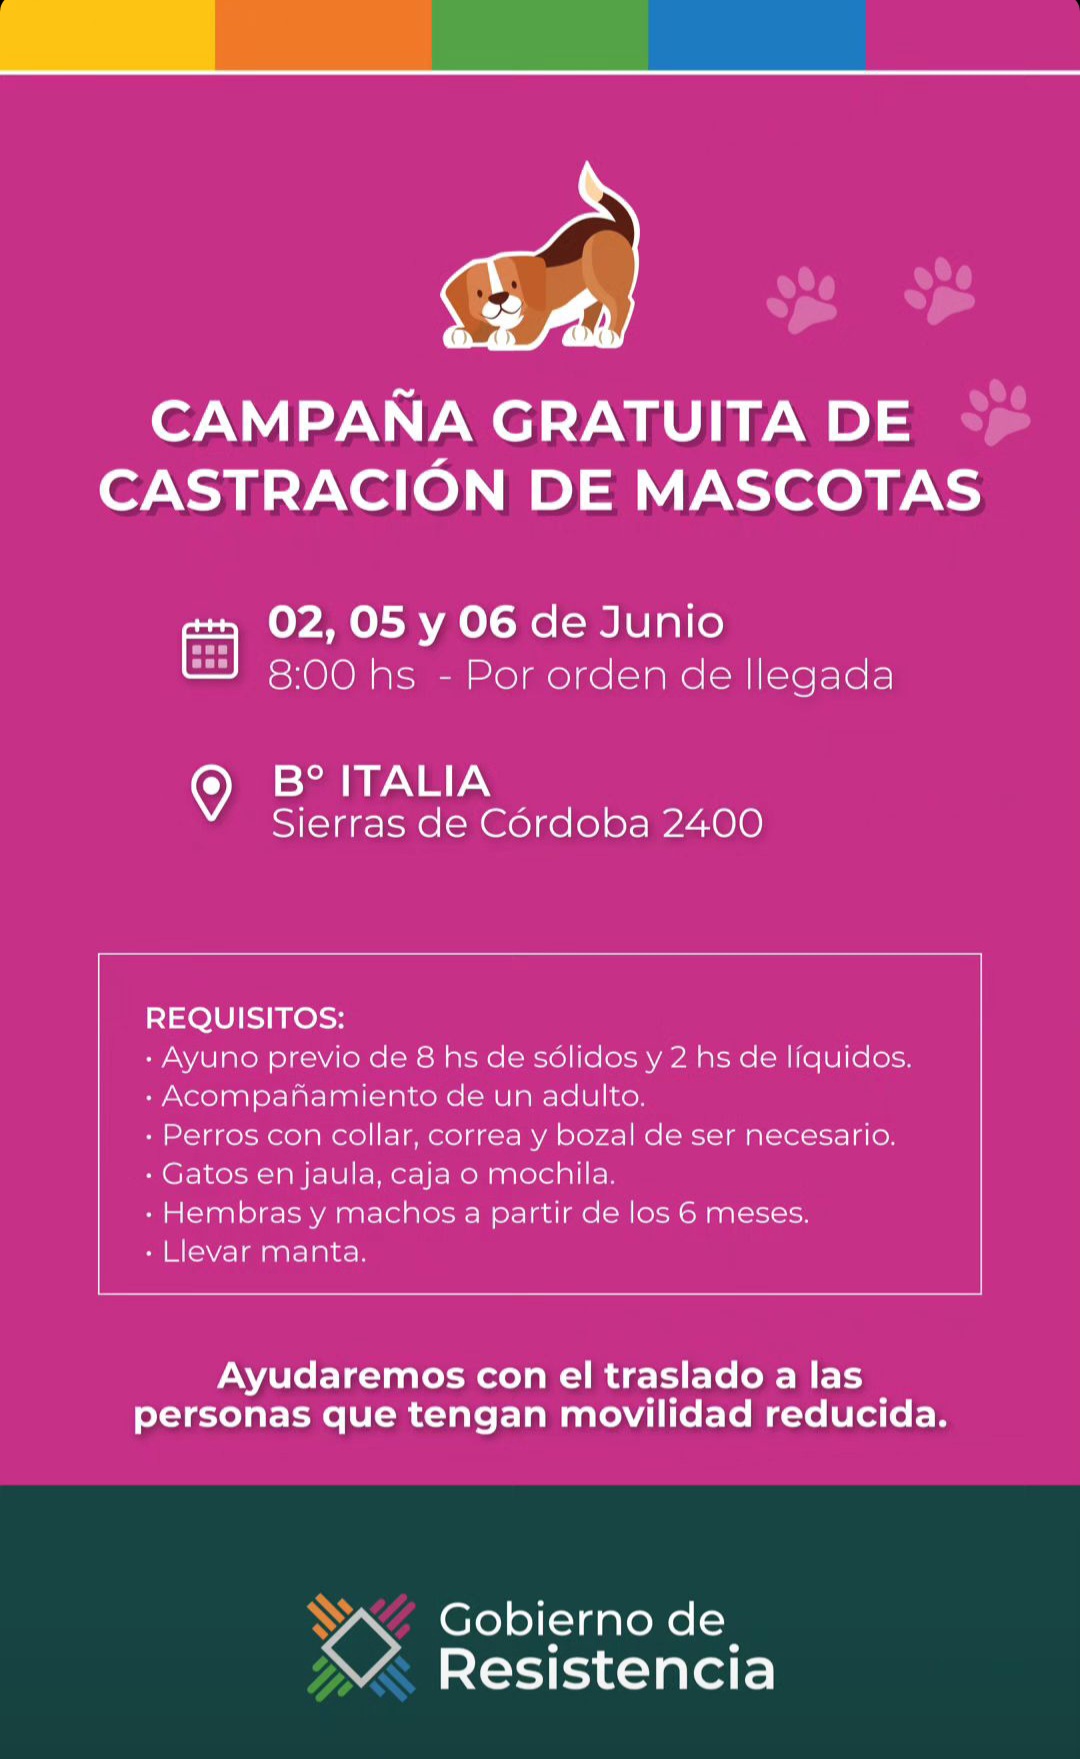 El programa de castración gratuita de mascotas estará en el B° Italia-Resistencia